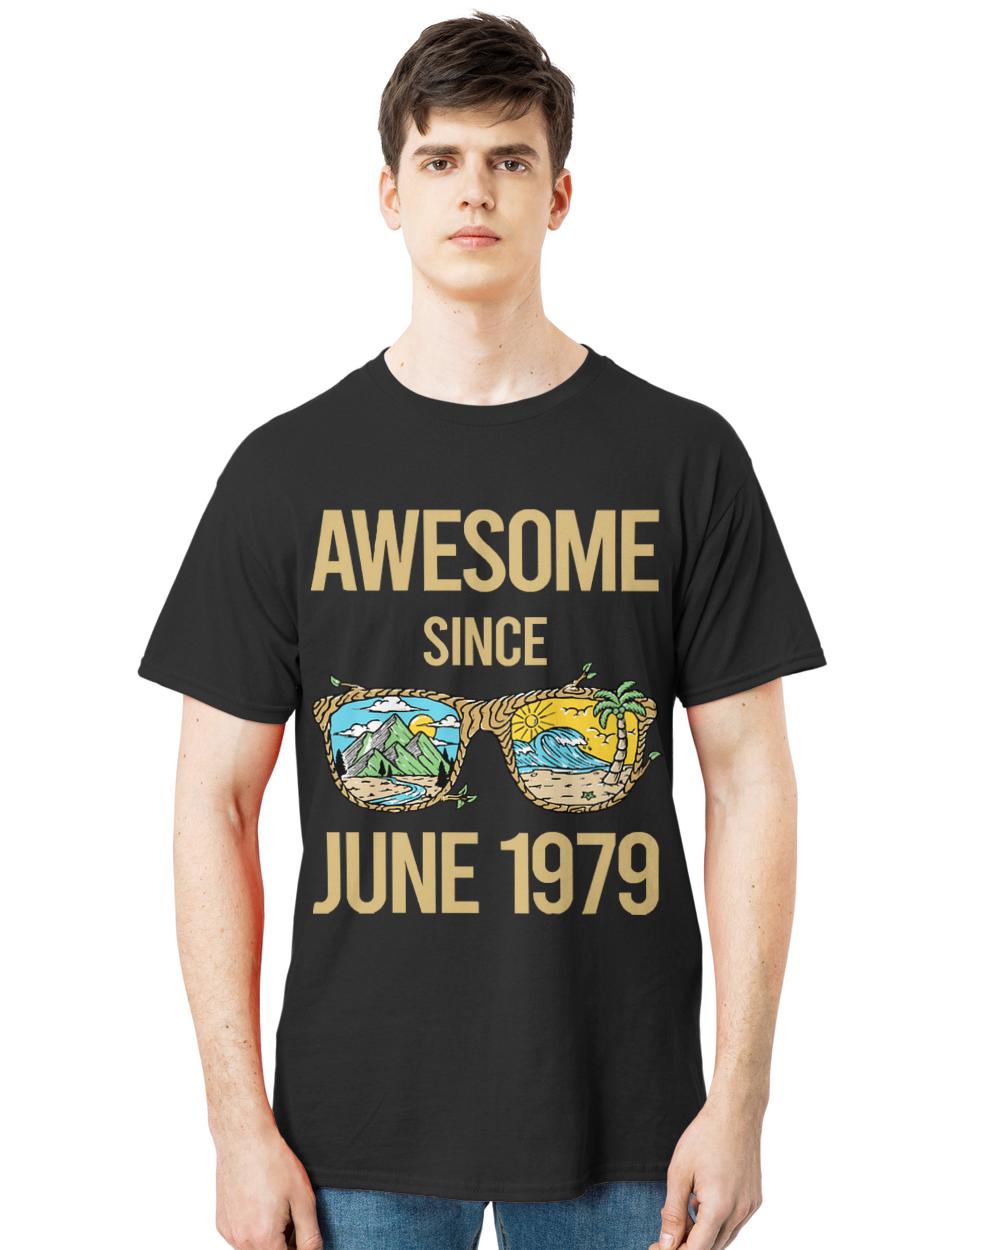 June 1979 T- Shirt Landscape Art - June 1979 T- Shirt